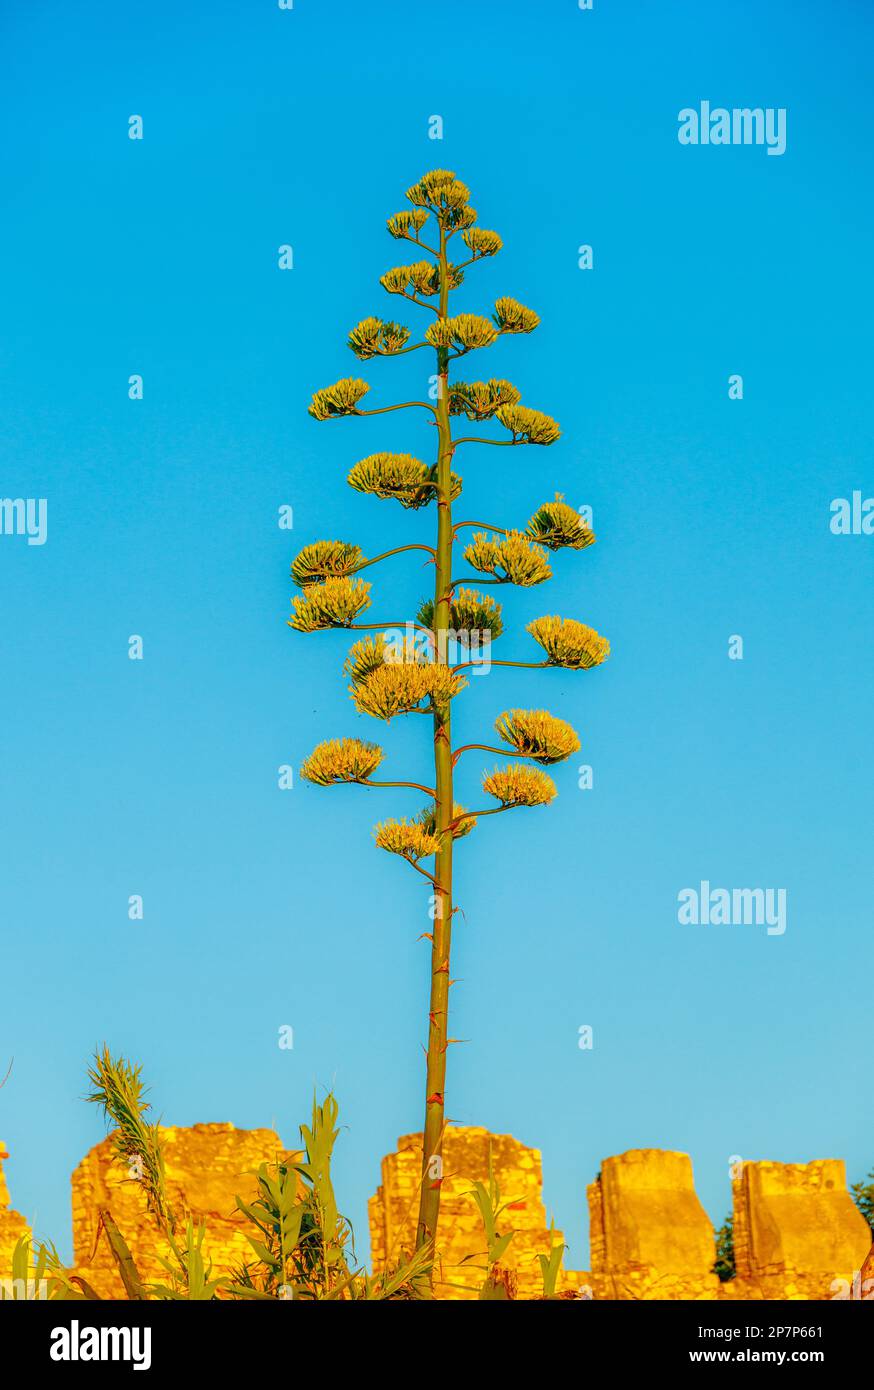 La tige droite et les fleurs jaunes vertes de l'algue contrastent avec le ciel bleu Banque D'Images